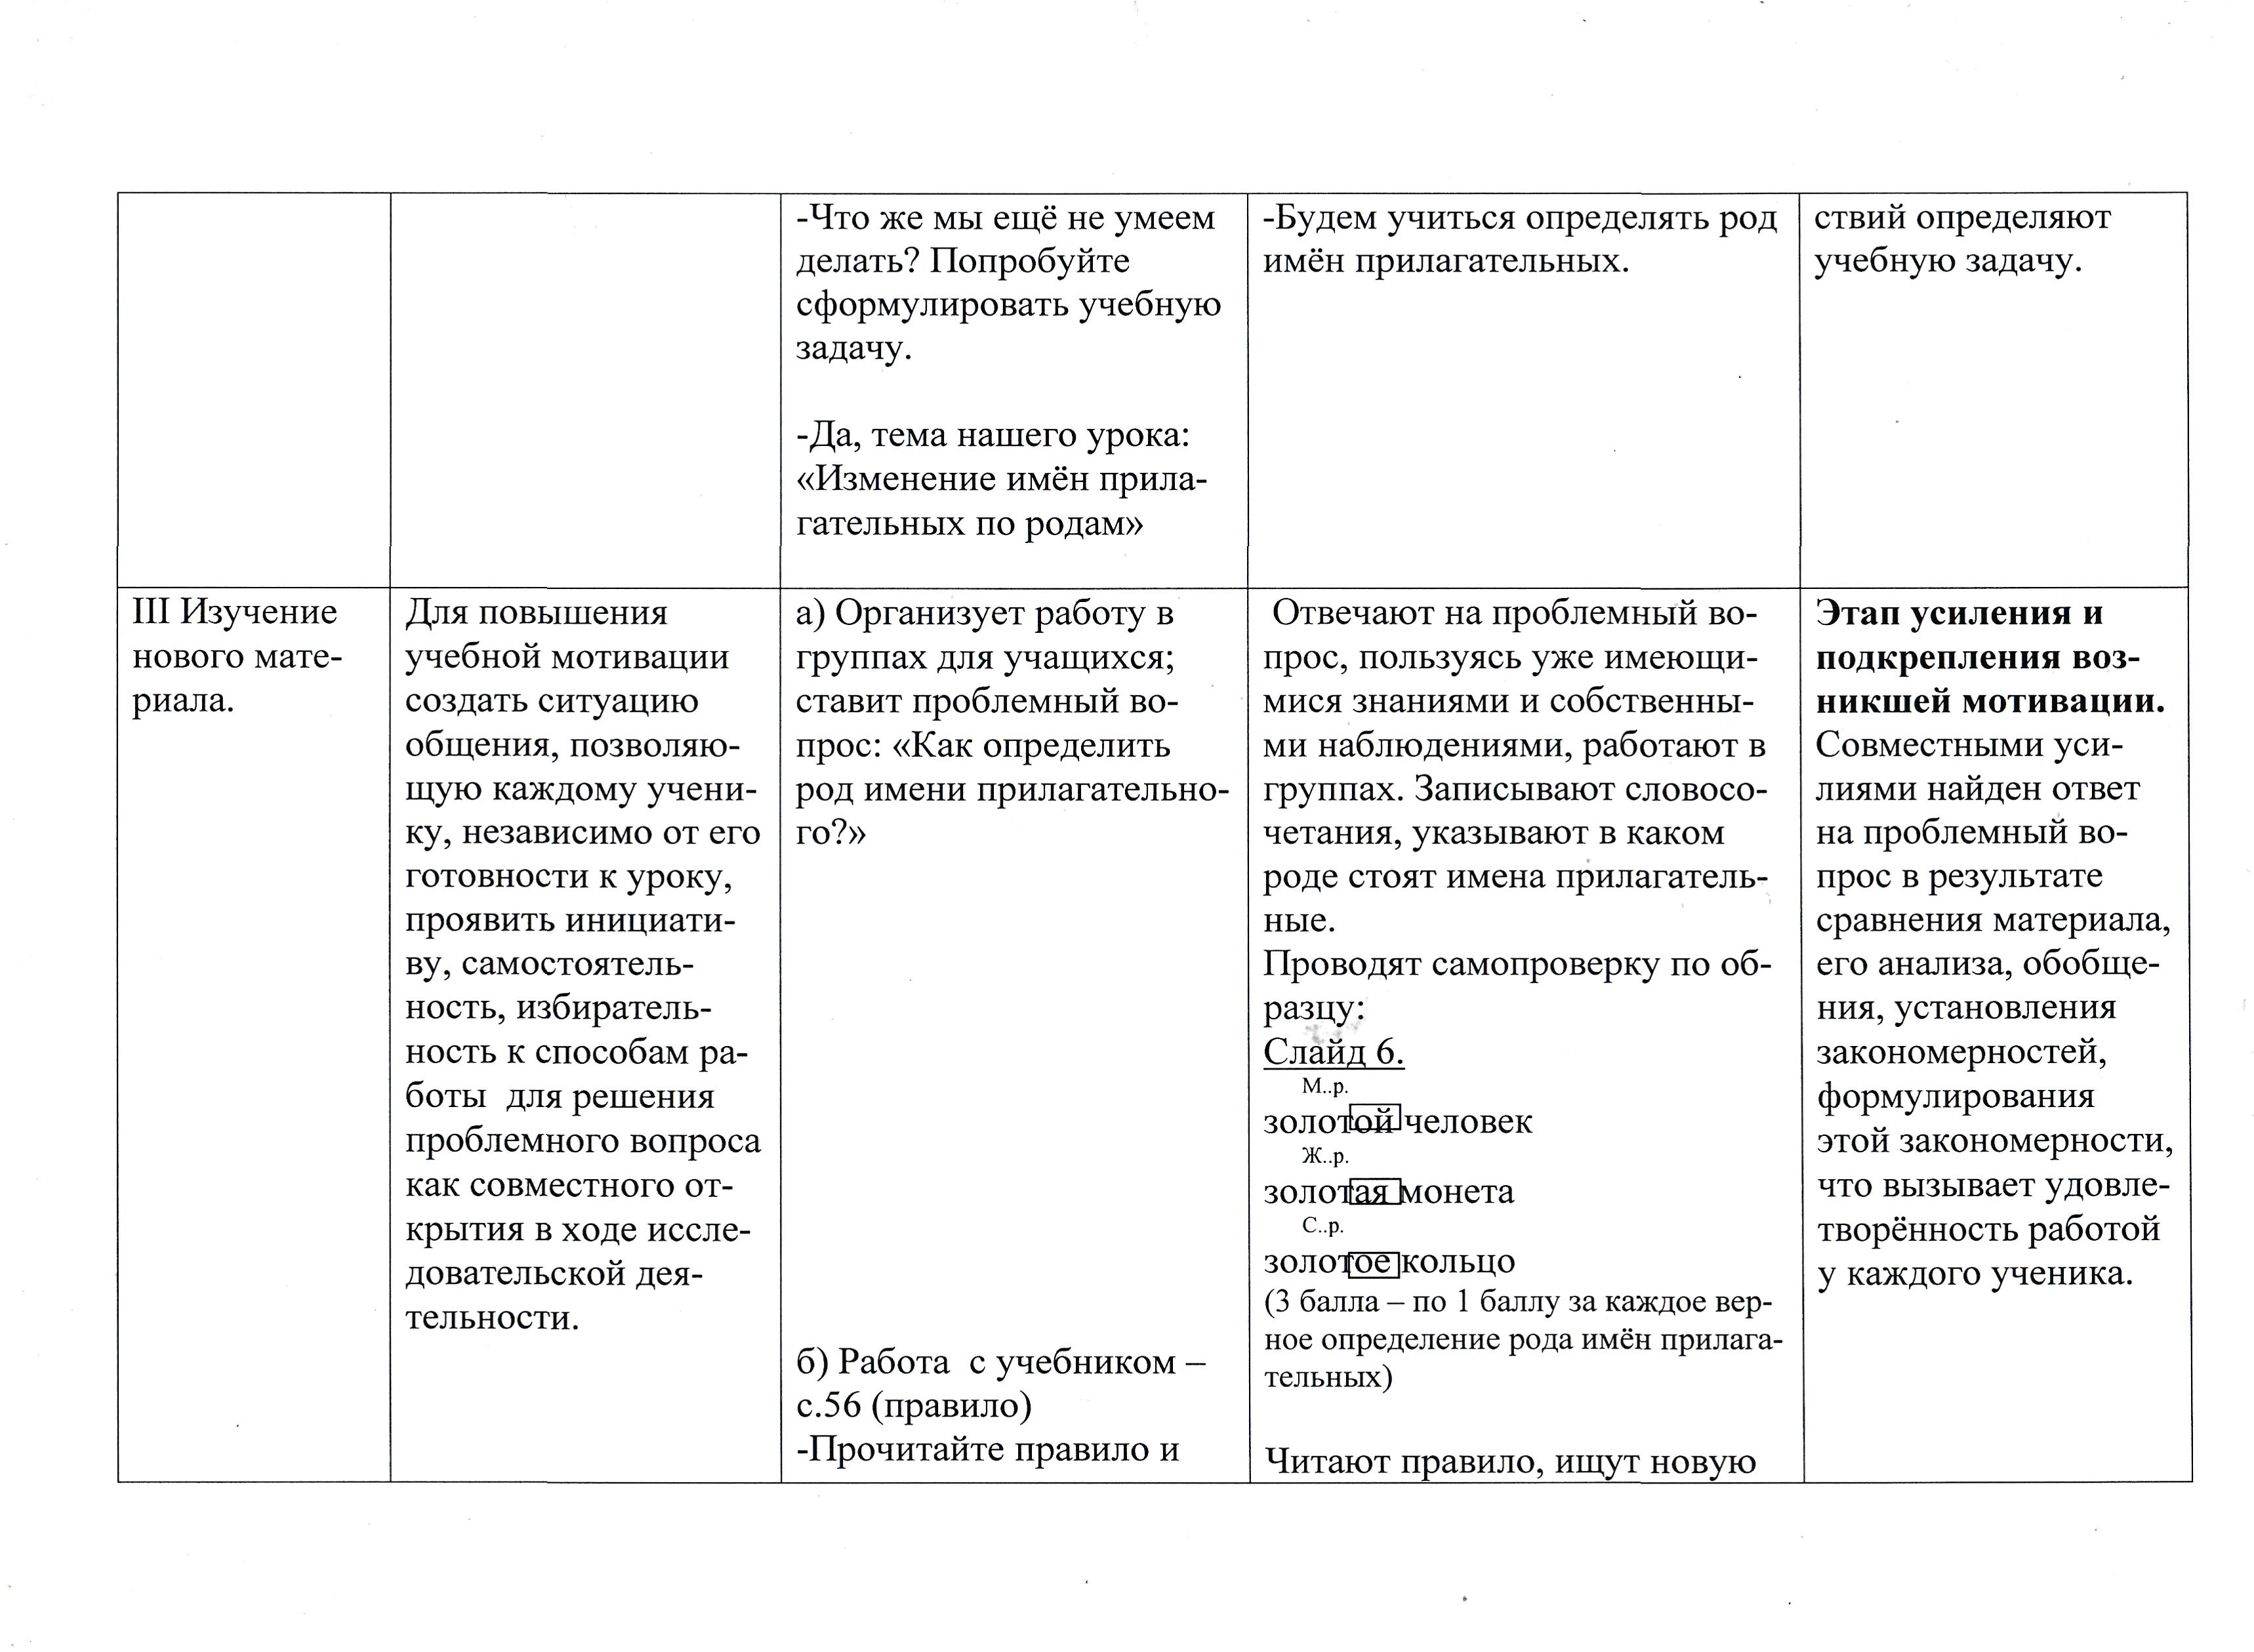 Конспект урока русского языка на тему Изменение имен прилагательных по родам